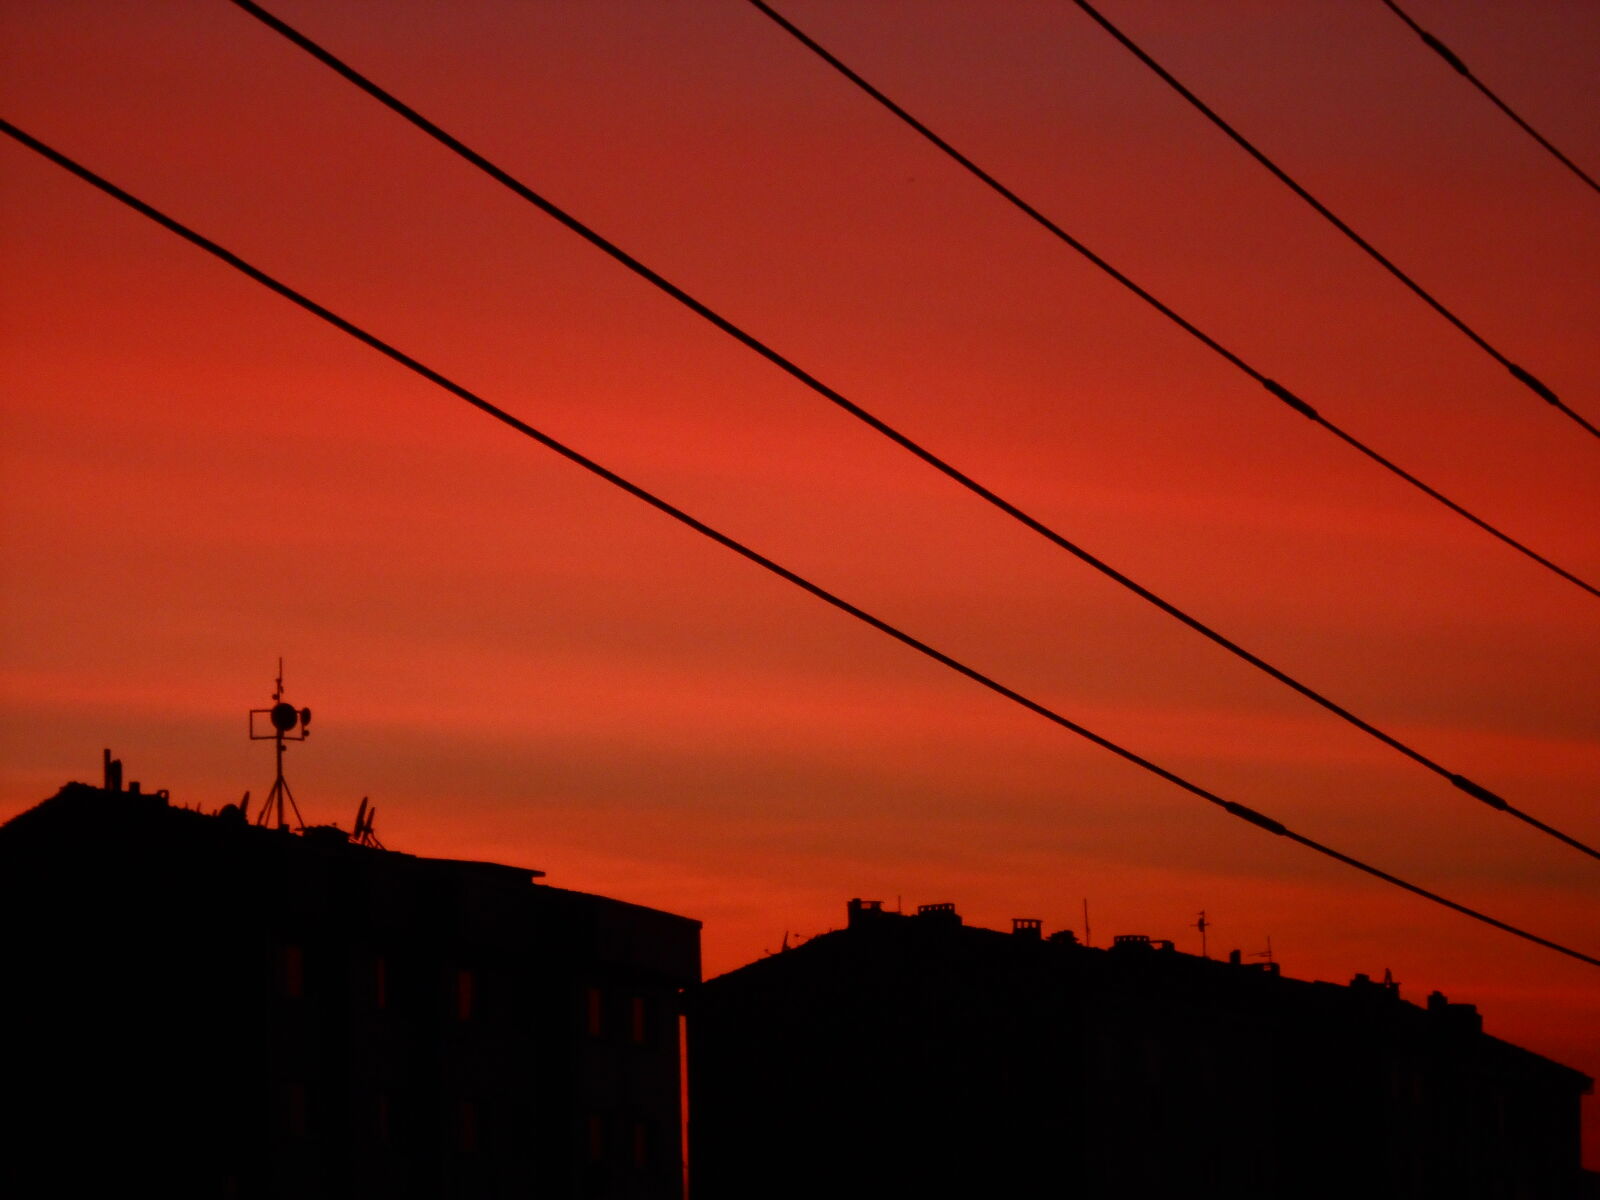 Nikon COOLPIX S2700 sample photo. Amazing, city, life, dusk photography